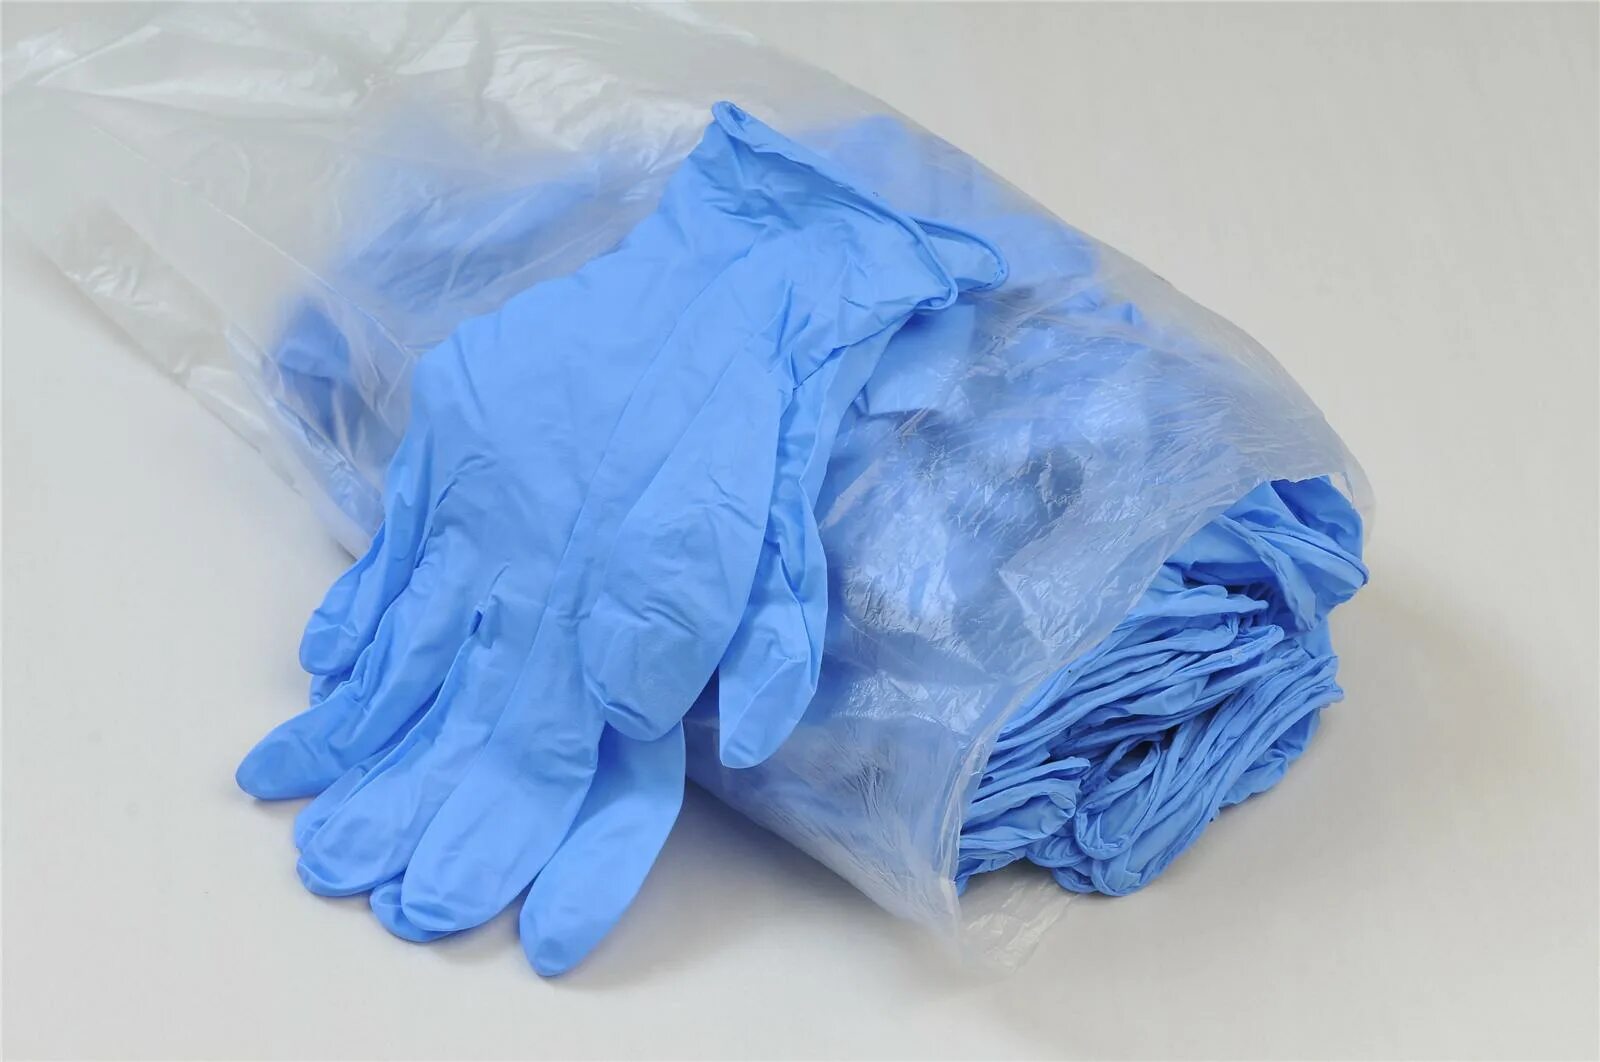 В мешке находятся 24 черные перчатки. Перчатки синие медицинские. Перчатки одноразовые. Медицинские перчатки куча. Перчатки одноразовые куча.